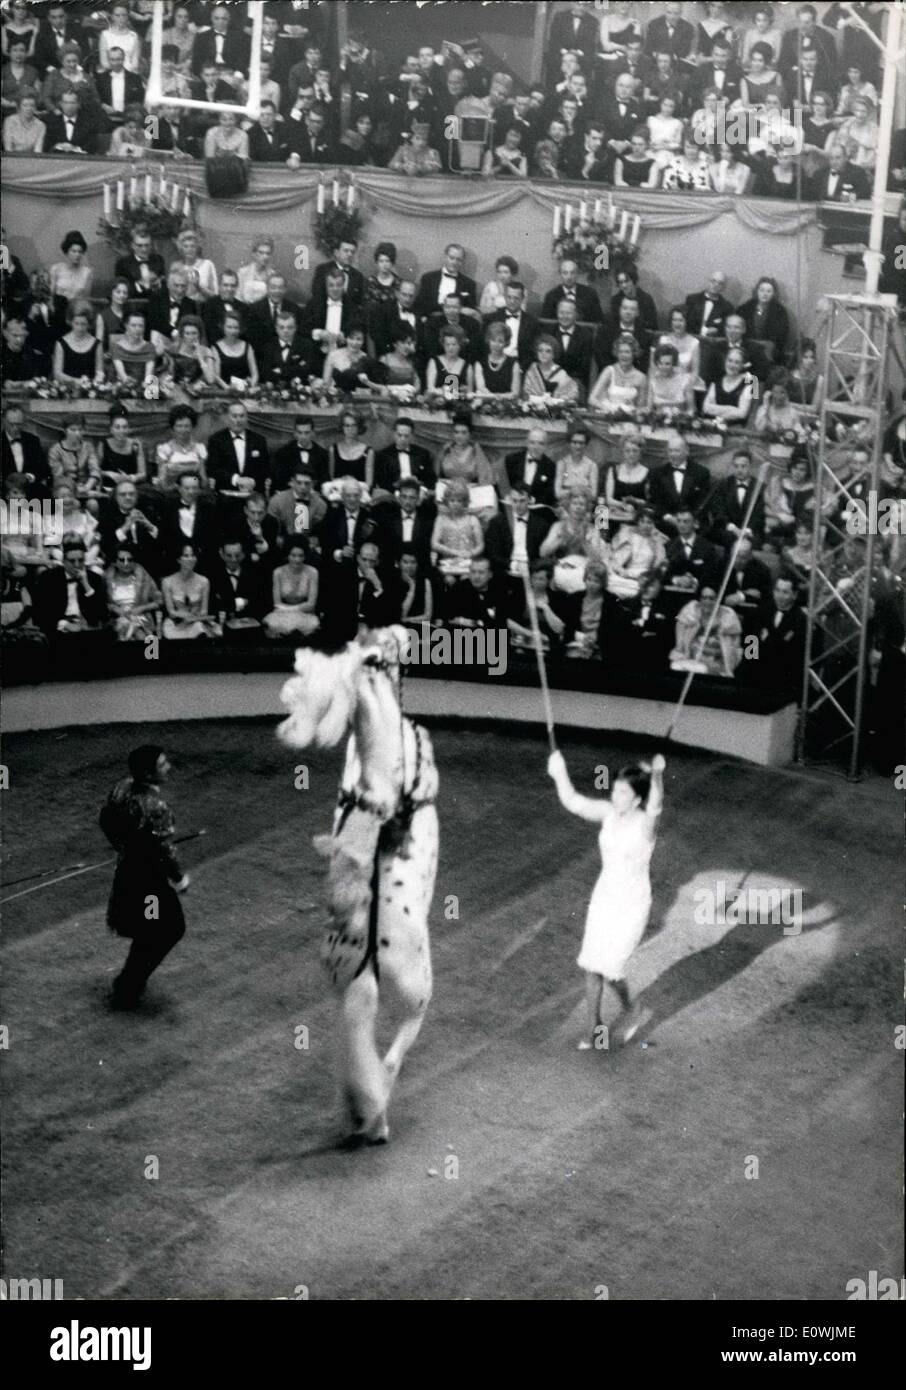 Mar 09, 1963 - La notte scorsa la XXXIII Gala degli artisti' europea ha dimostrato il suo splendore al Cirque d'Hiver davanti a tutti di Parigi e con la partecipazione di tutti alla televisione e stelle del cinema. Foto Stock